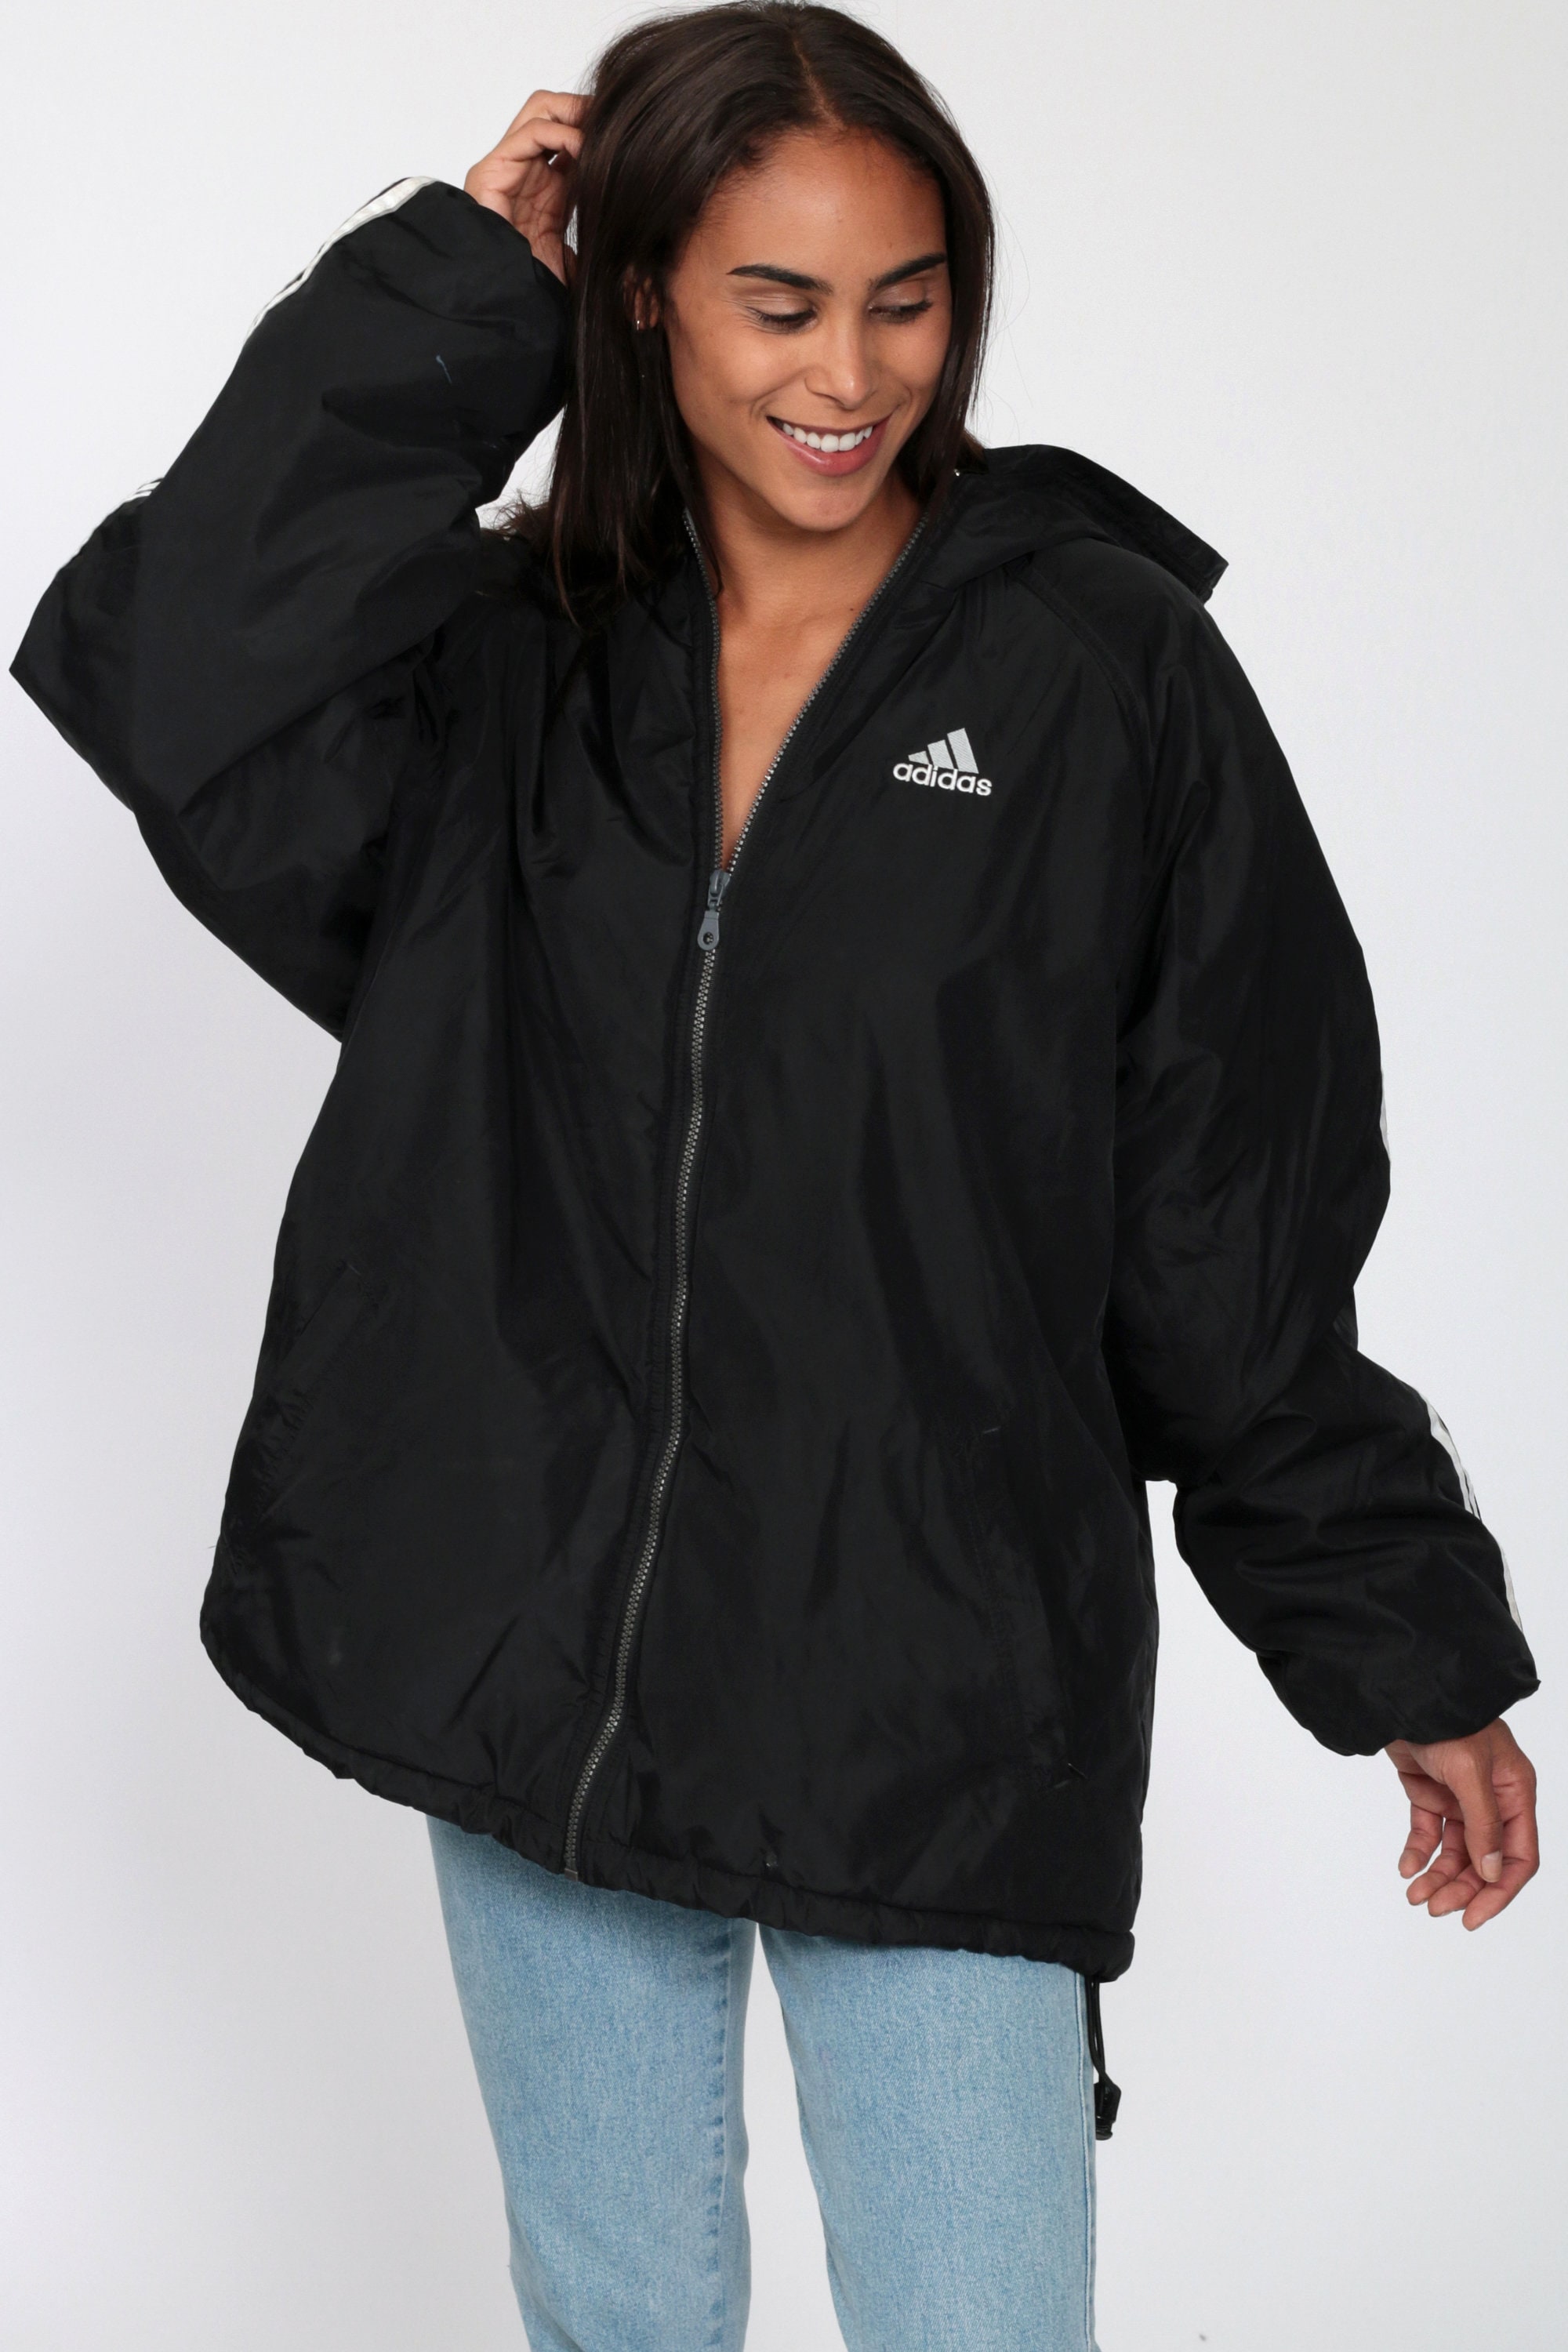 Reversible Adidas Hooded Jacket Black Hoodie Coat 90s Jacket Hood Coat